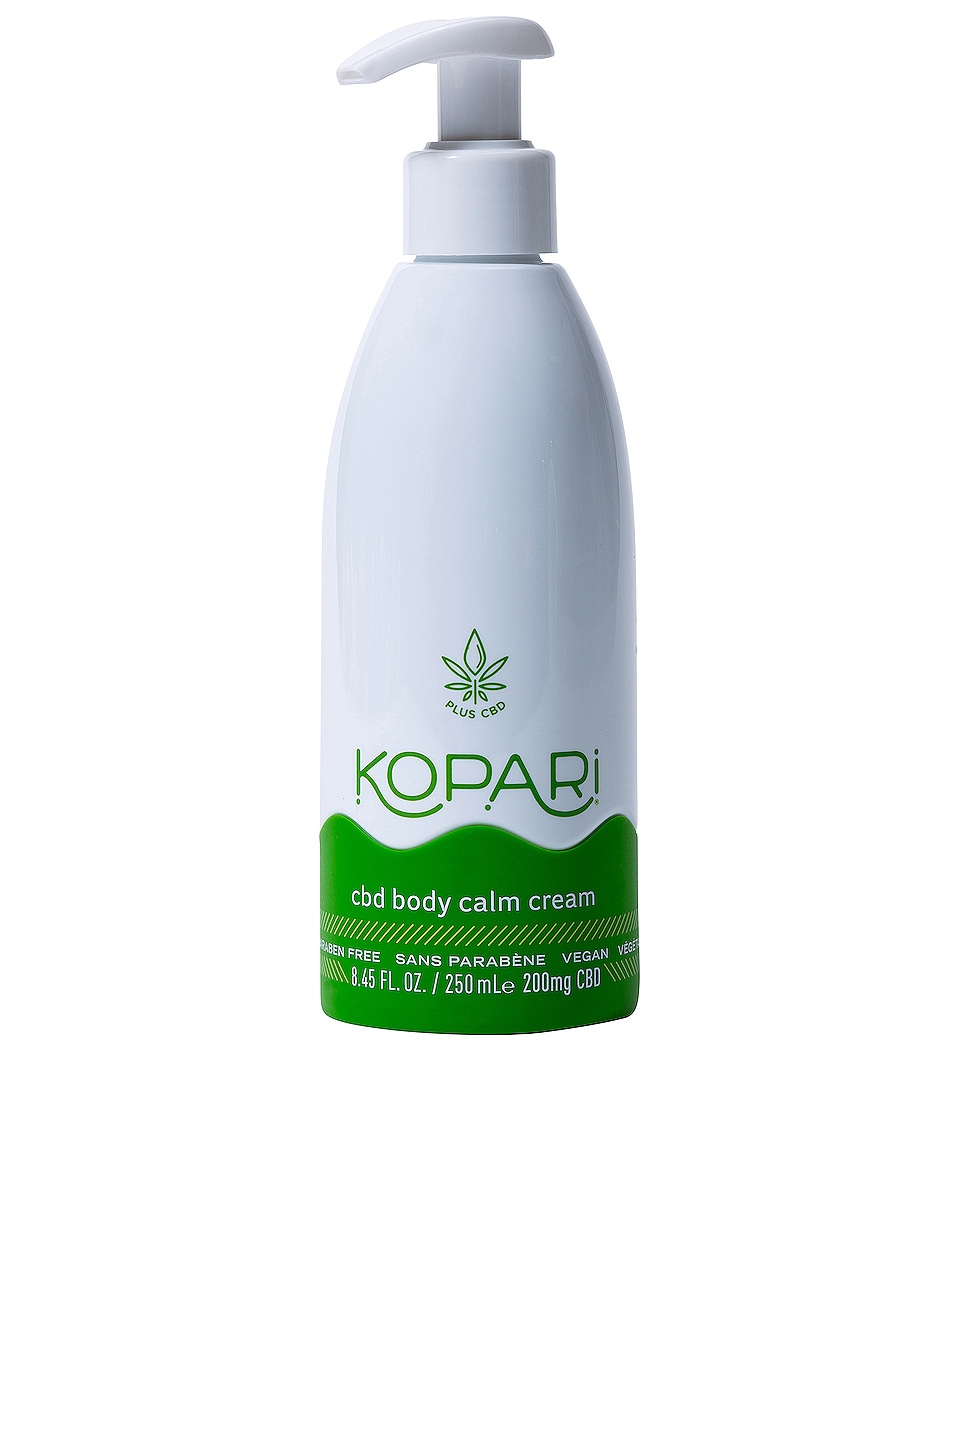 Kopari Cbd Body Calm Cream In N,a